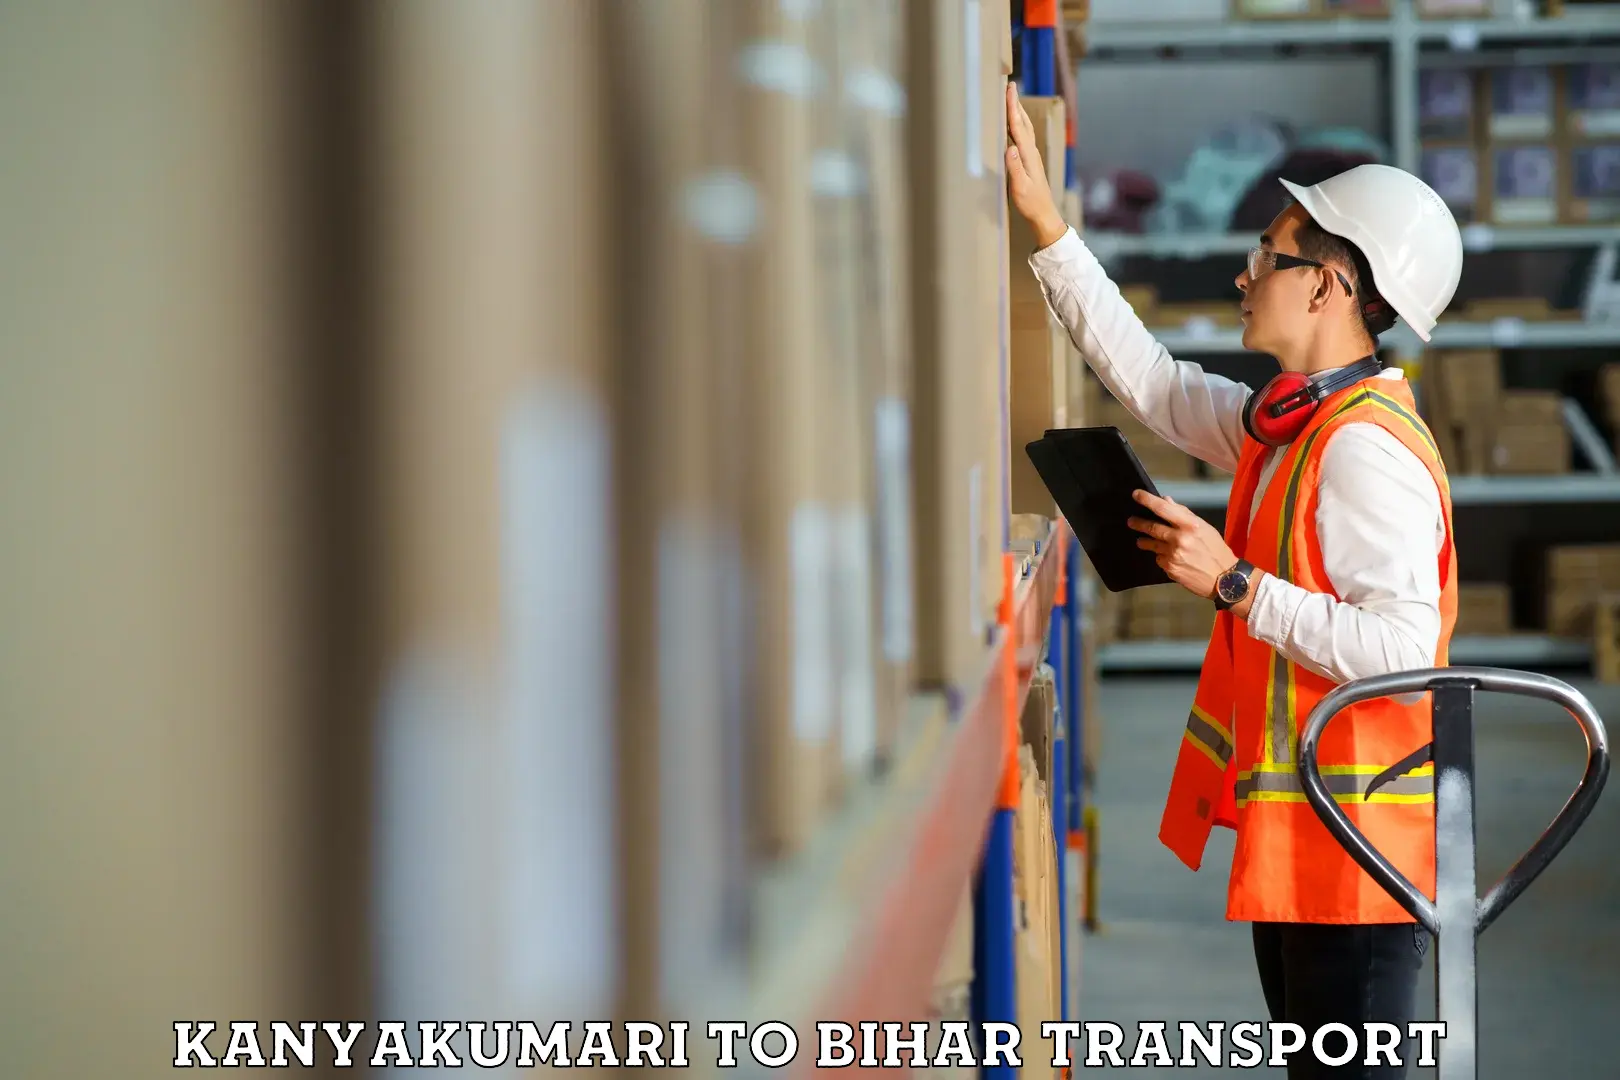 Furniture transport service Kanyakumari to Nalanda